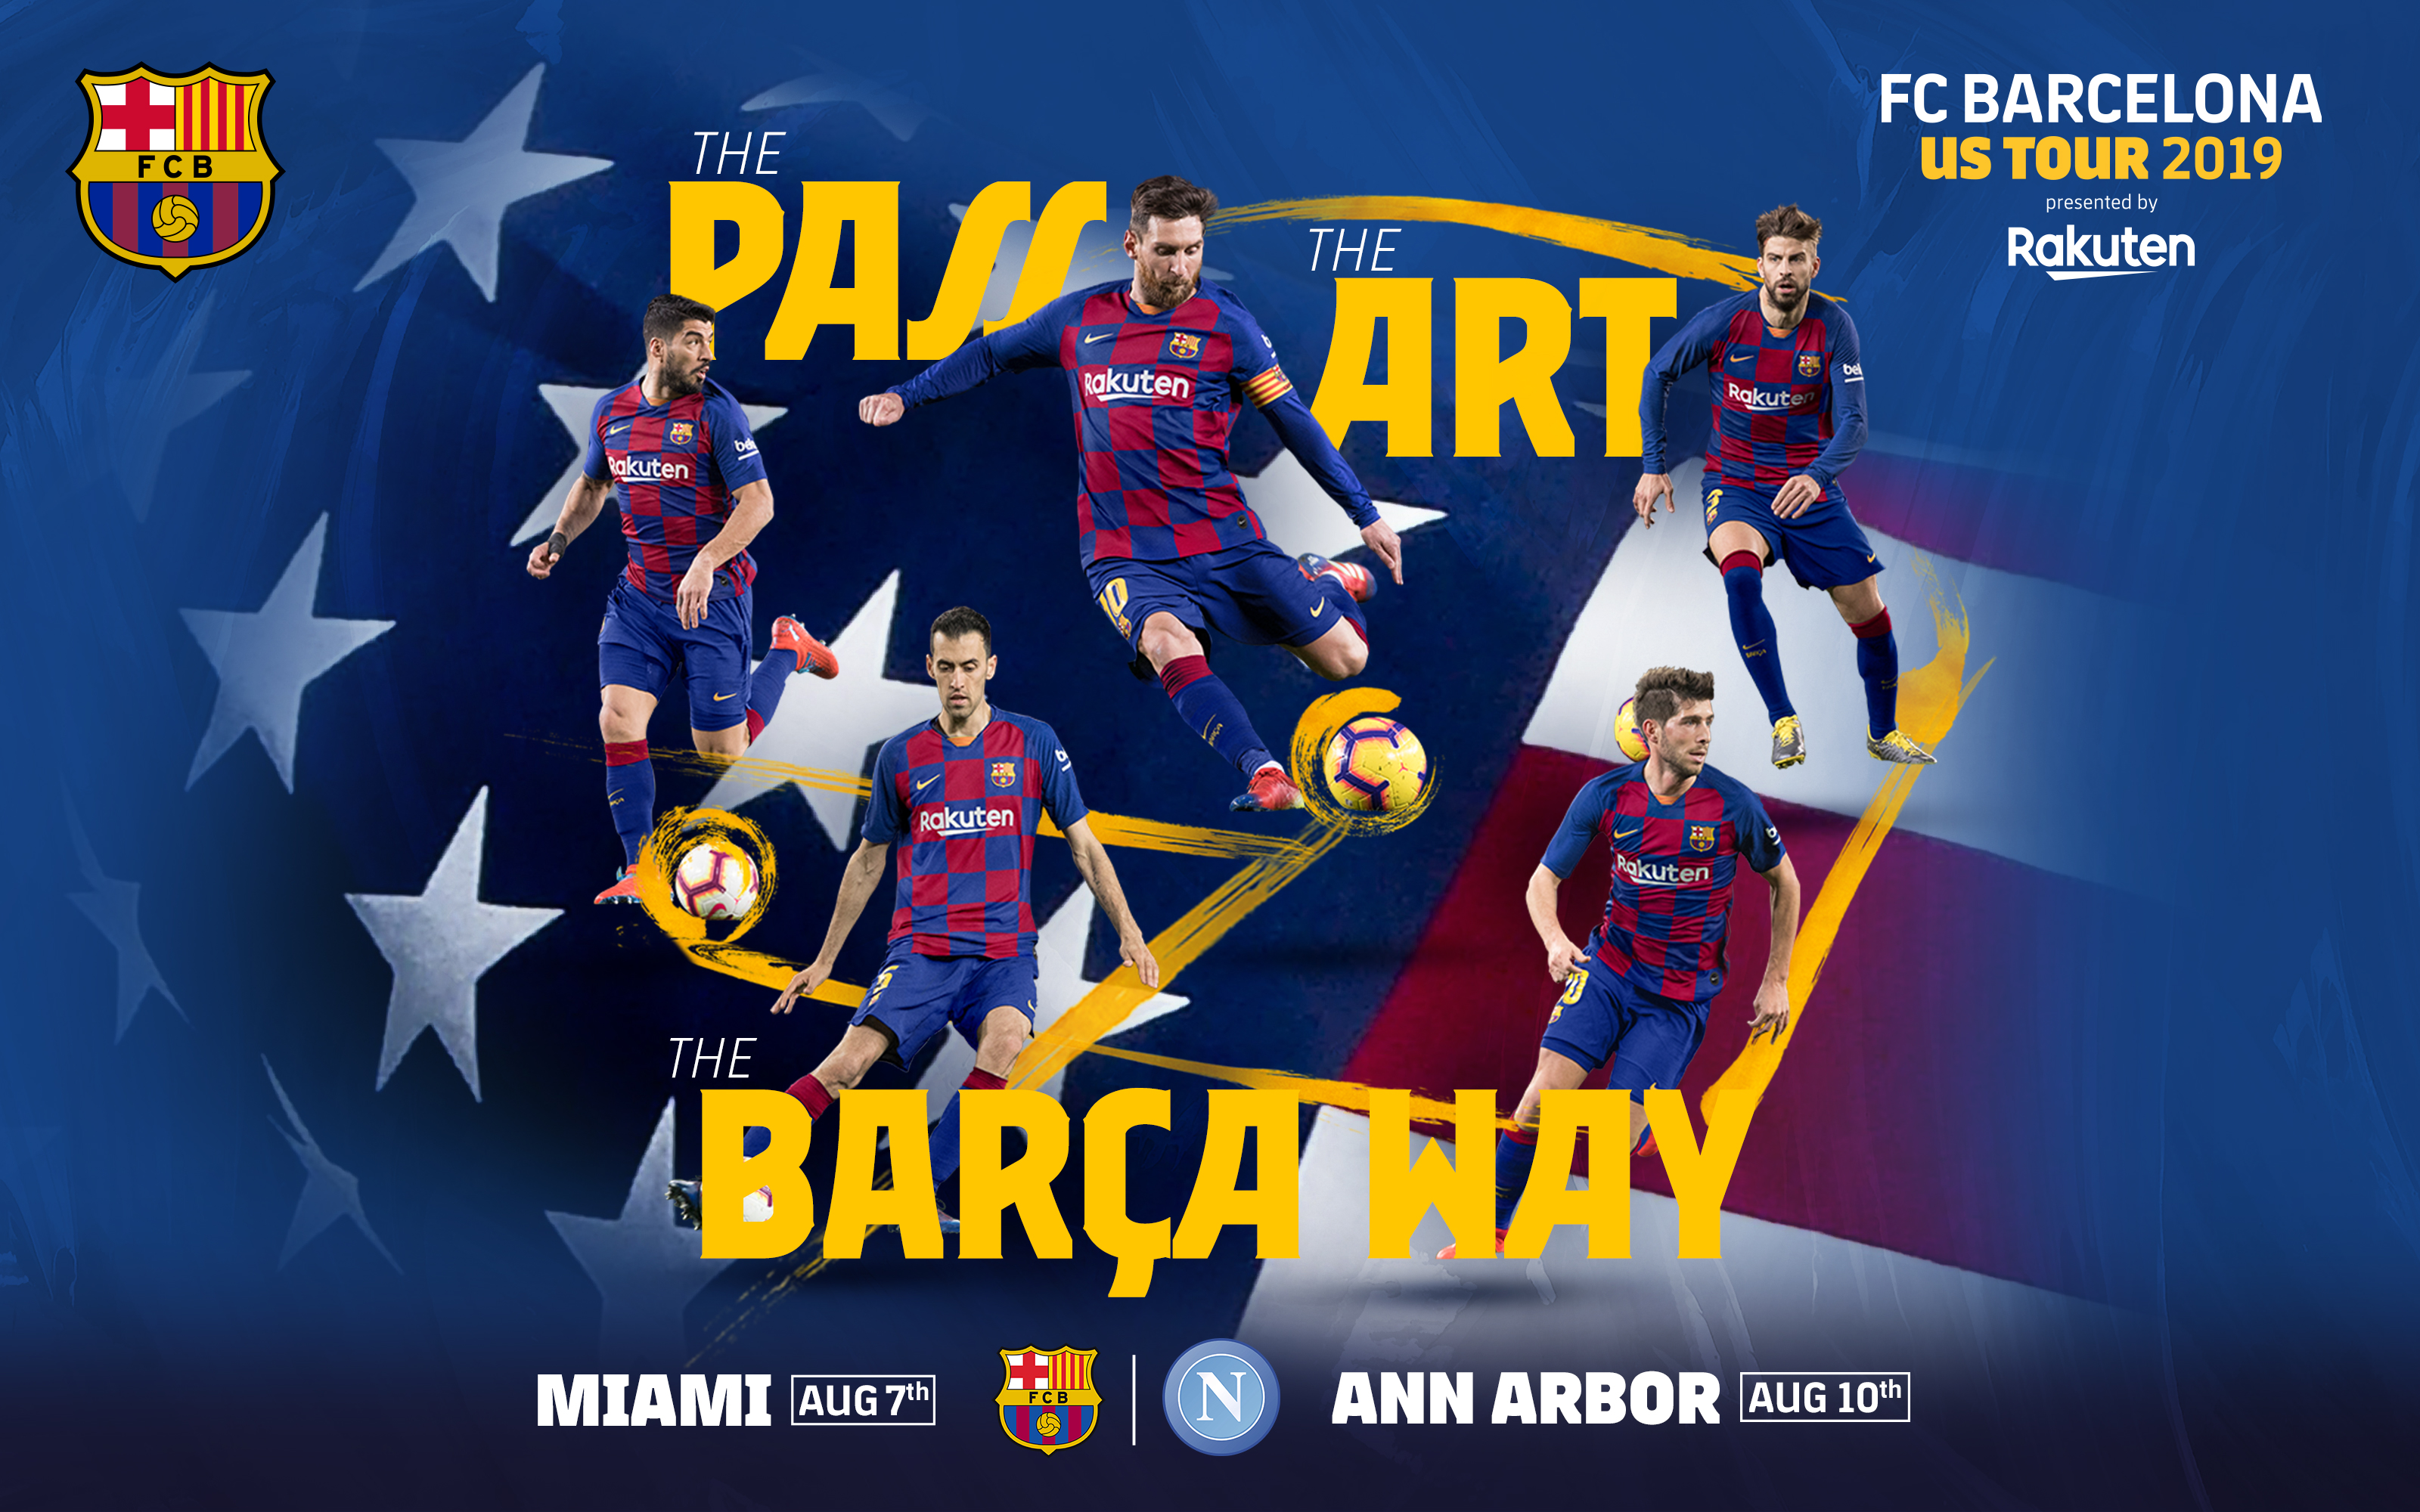 L'agenda de la tournée du Barça aux ÉtatsUnis